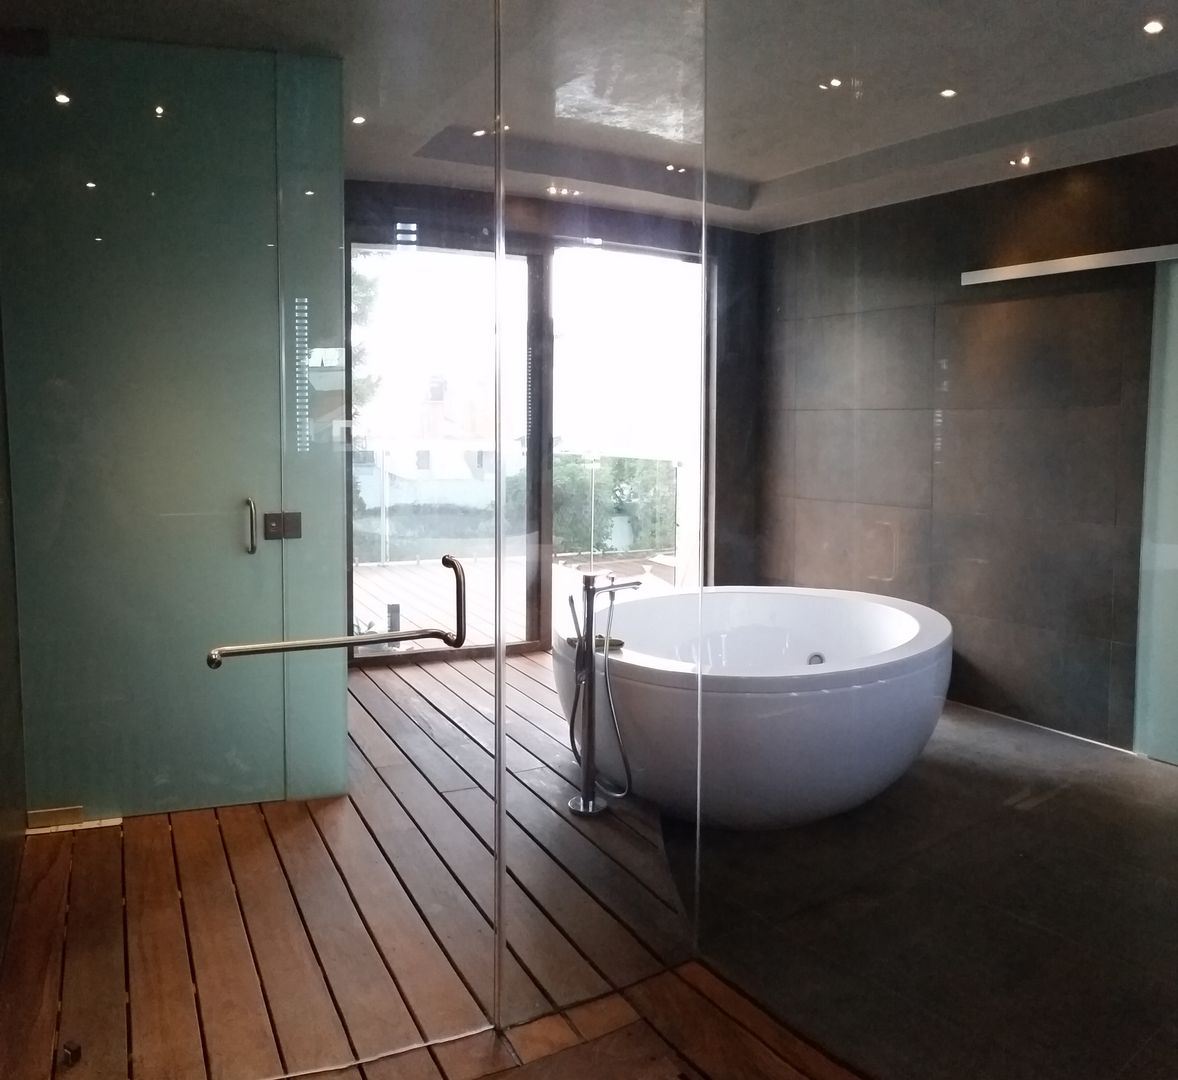 Spa en casa, el baño de ensueño., ebanisART Espacio y Concepto ebanisART Espacio y Concepto حمام